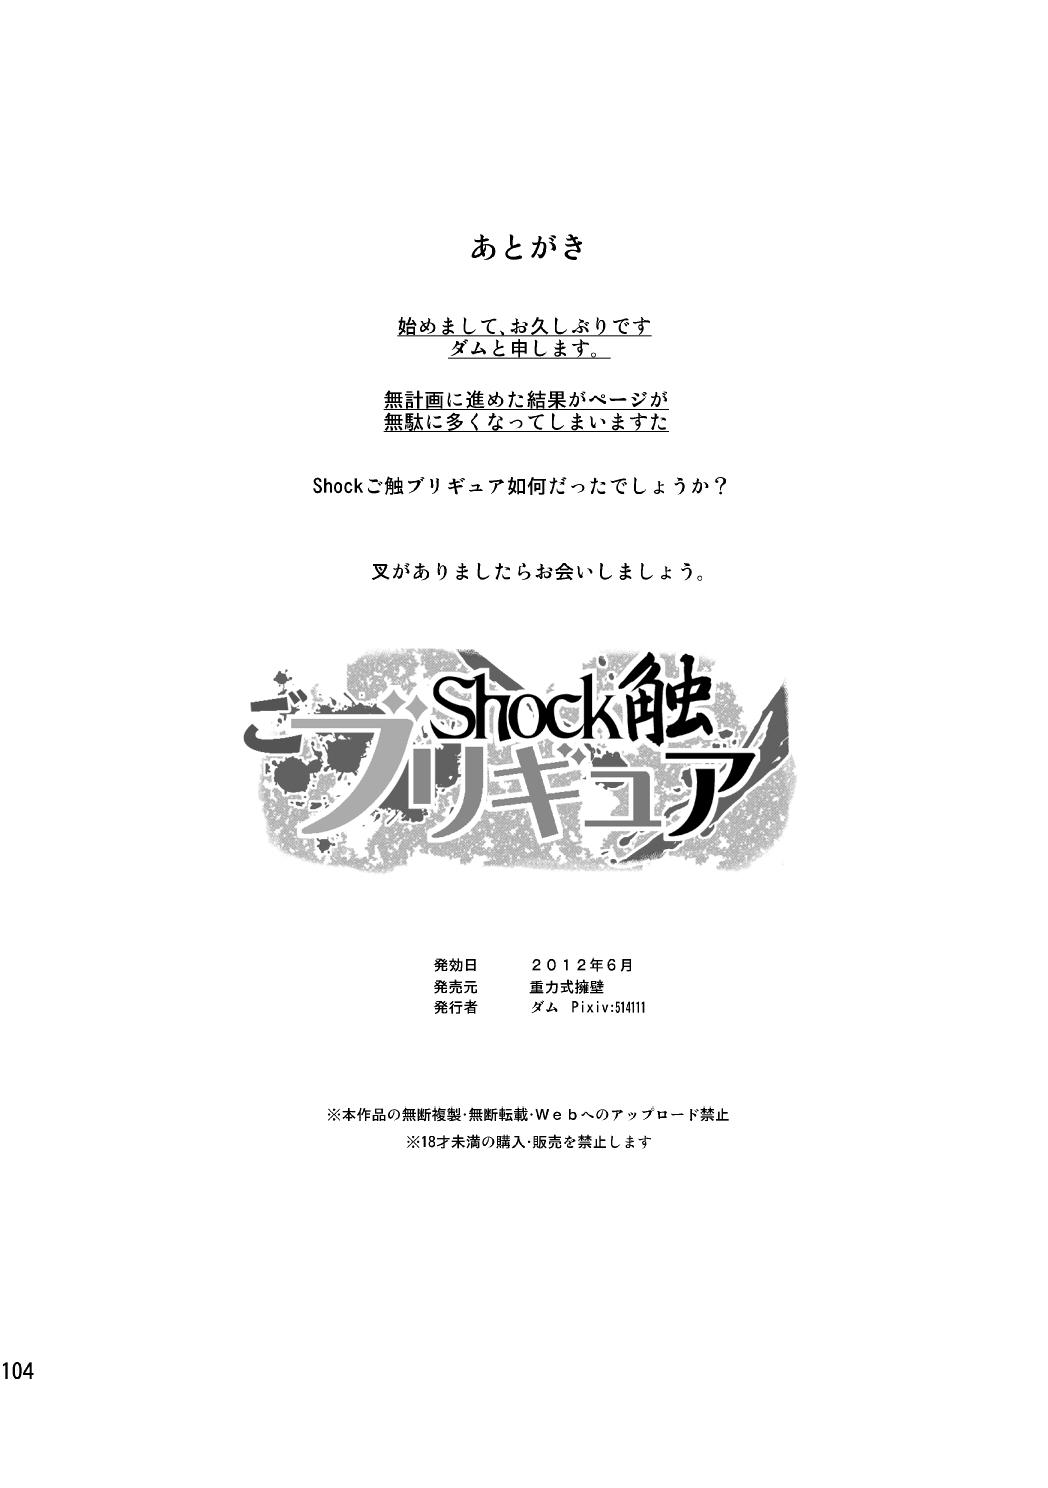 Shock Shoku go Burigyua 103